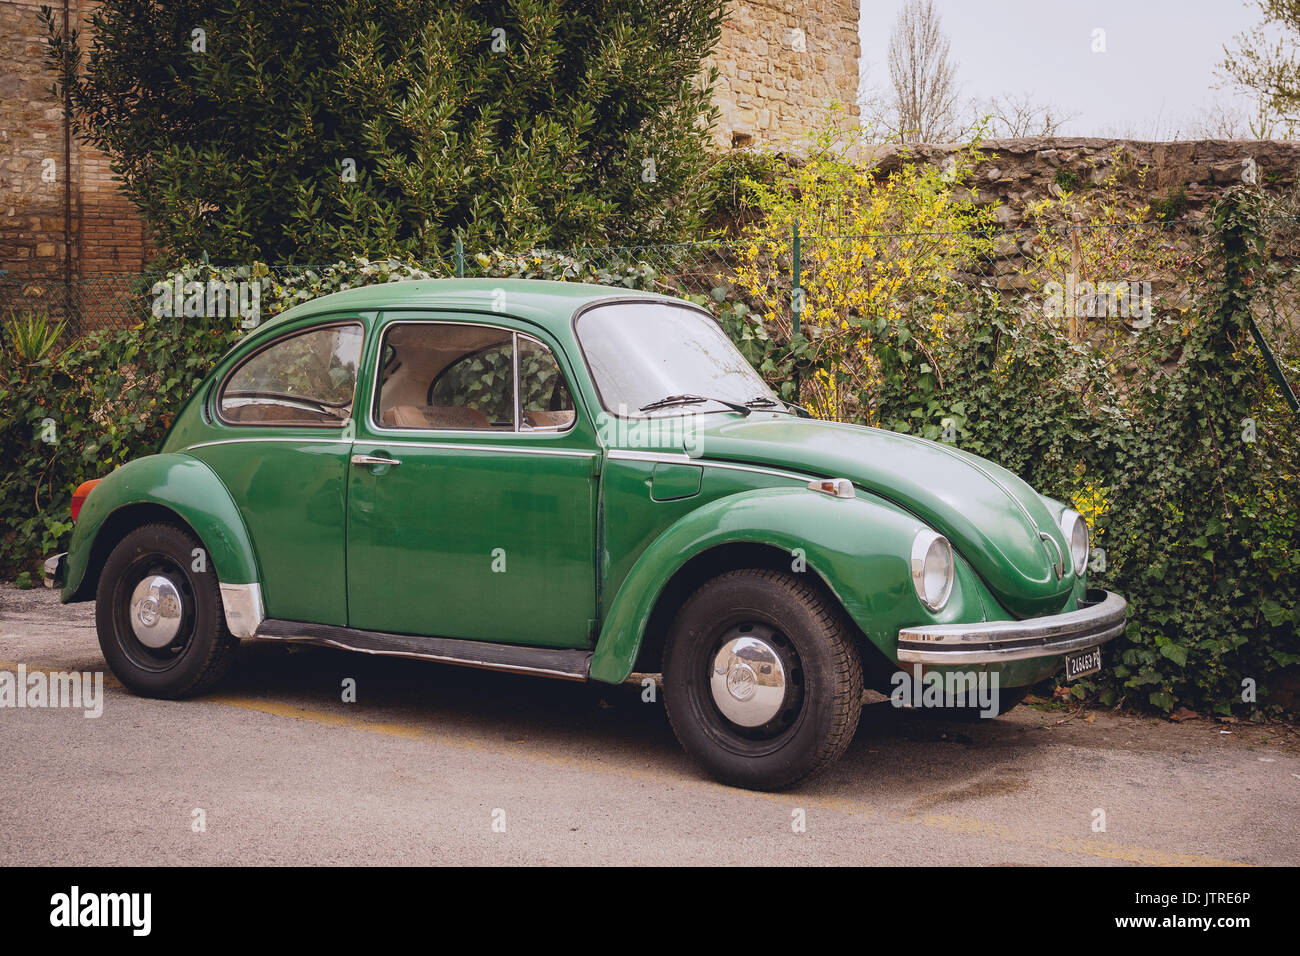 Vintage Volkswagen Beetle. Italy, 2017. Stock Photo